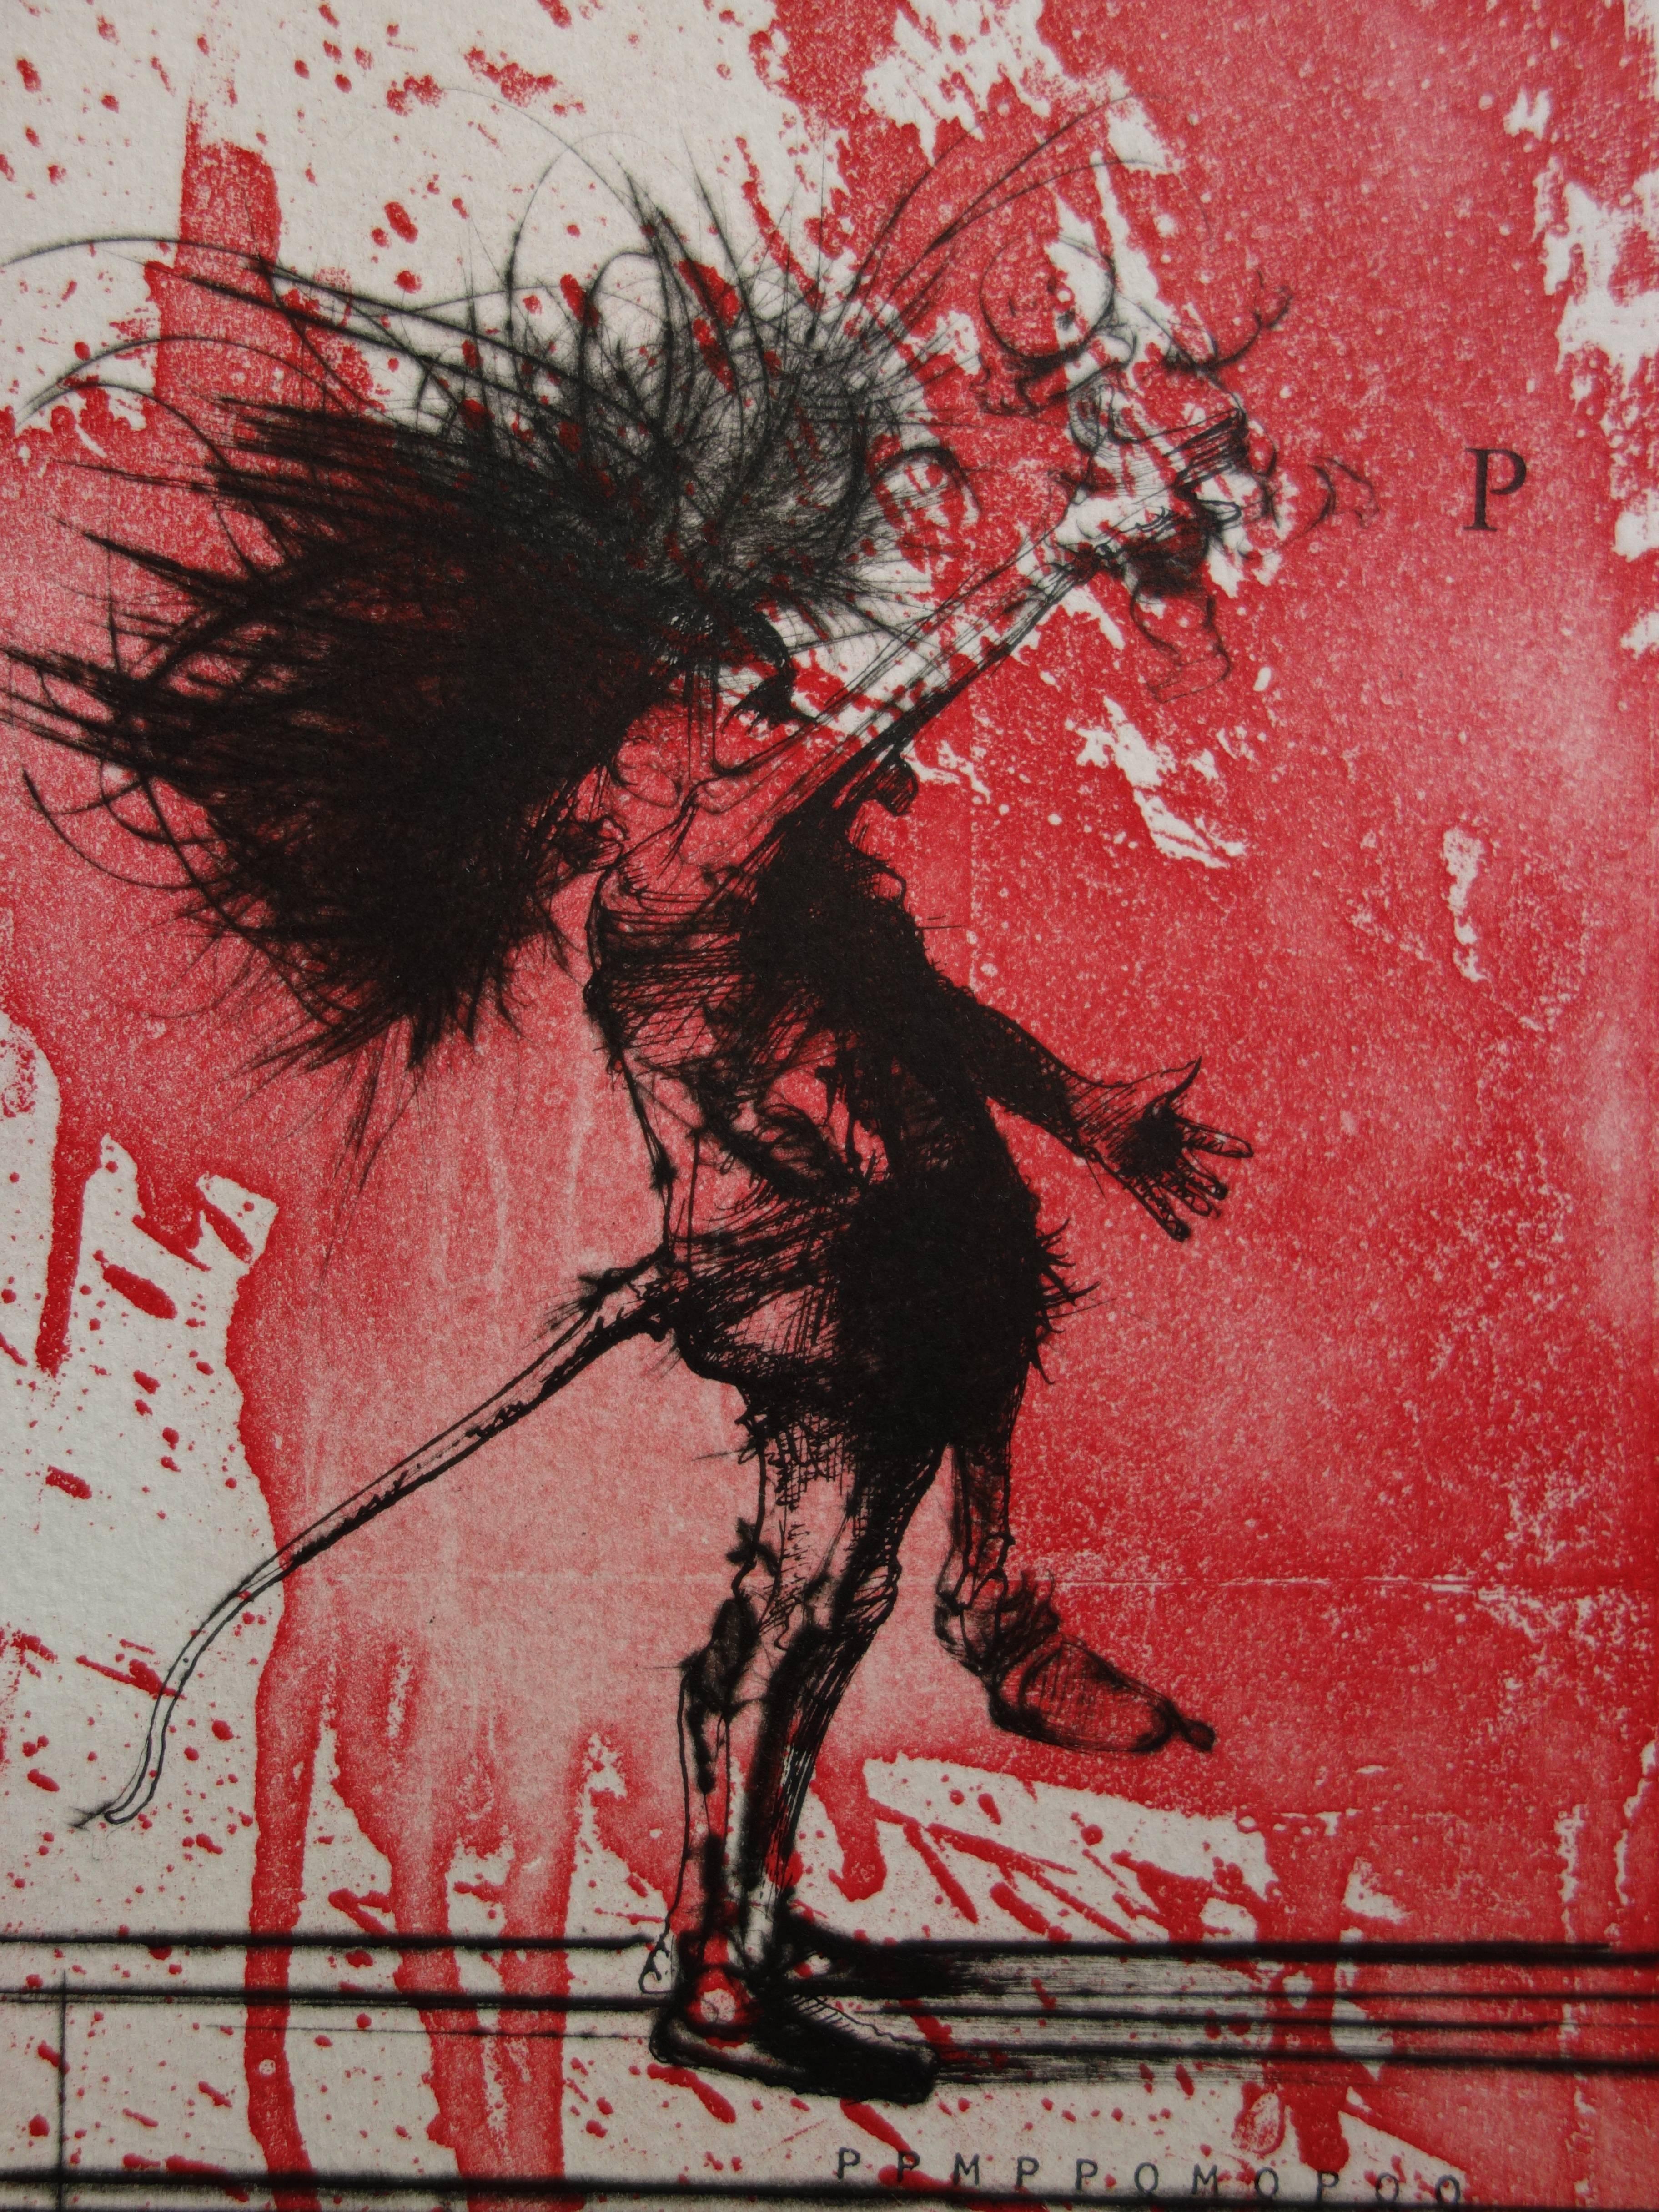 Dado (appelé Miodrag Djuric) (1933-2010)
Deux hommes sur un fond rouge

Gravure et aquatinte originales
Signé à la main au crayon
Numéroté / 99 ex
Sur vélin d'Arches 76 x 56 cm (c. 30 x 22 inch)

Excellent état